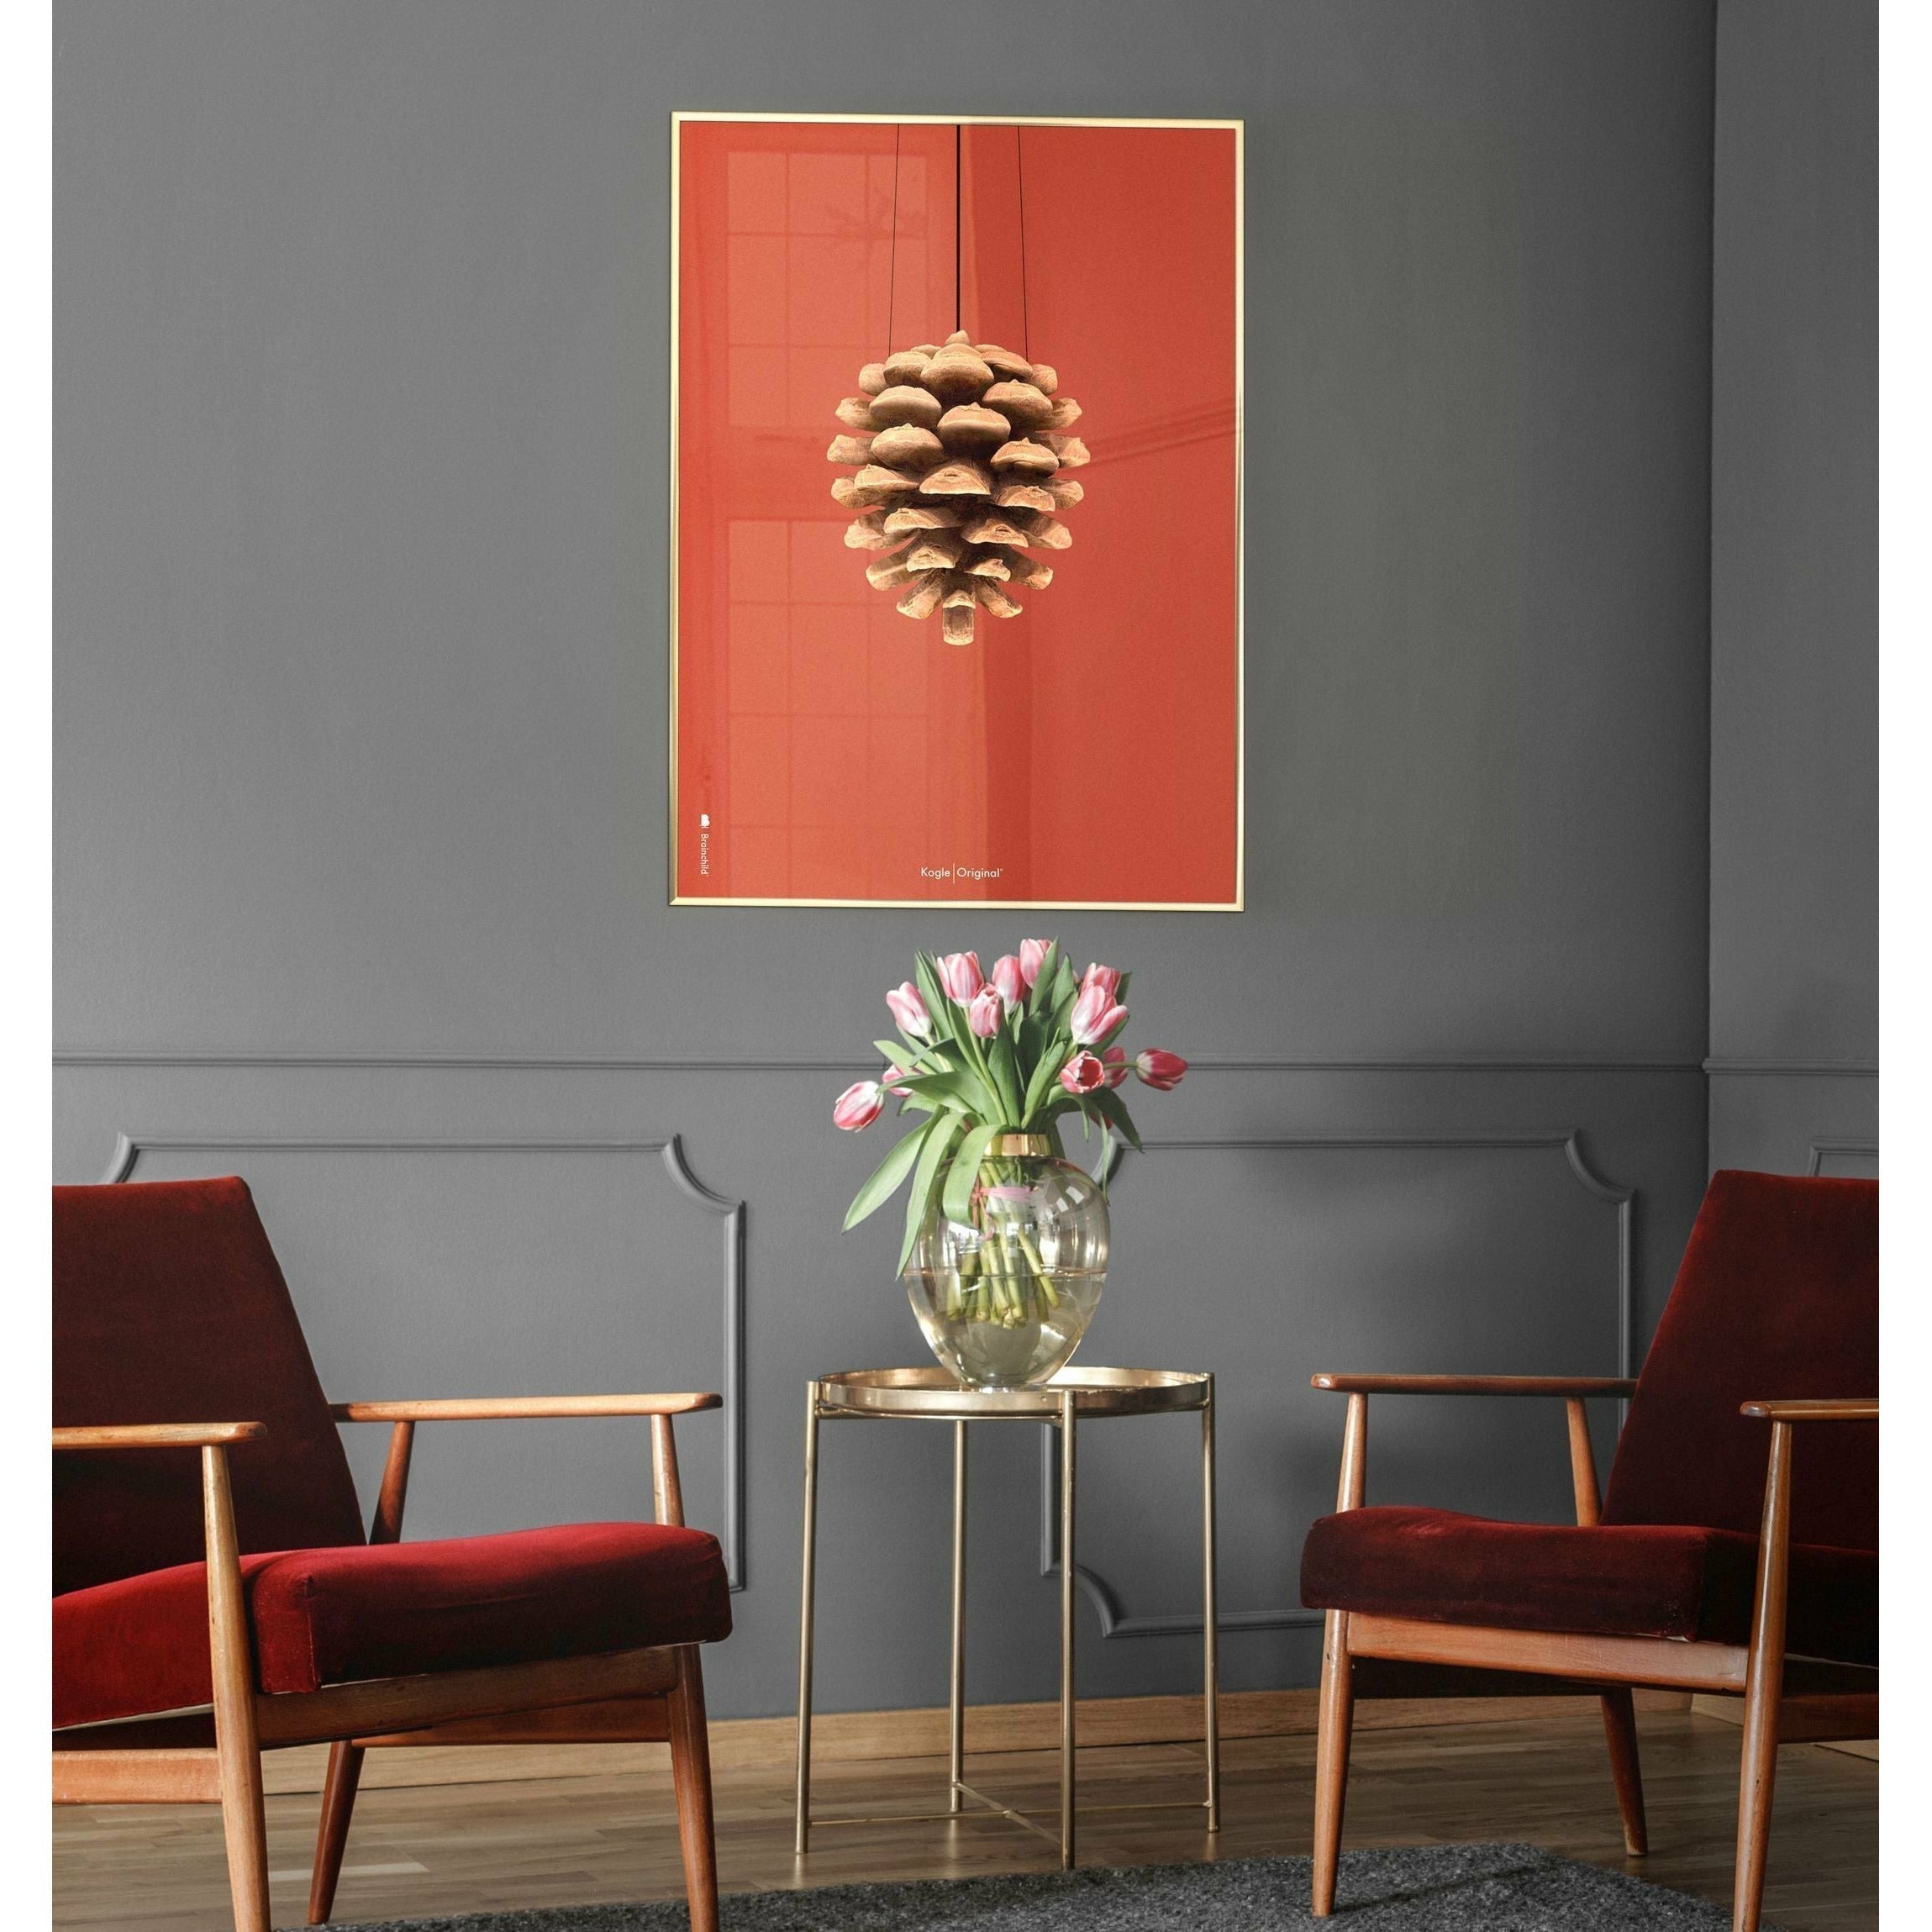 Pomysły sosna stożka klasyczna rama plakatowa wykonana z ciemnego drewna 30x40 cm, czerwone tło